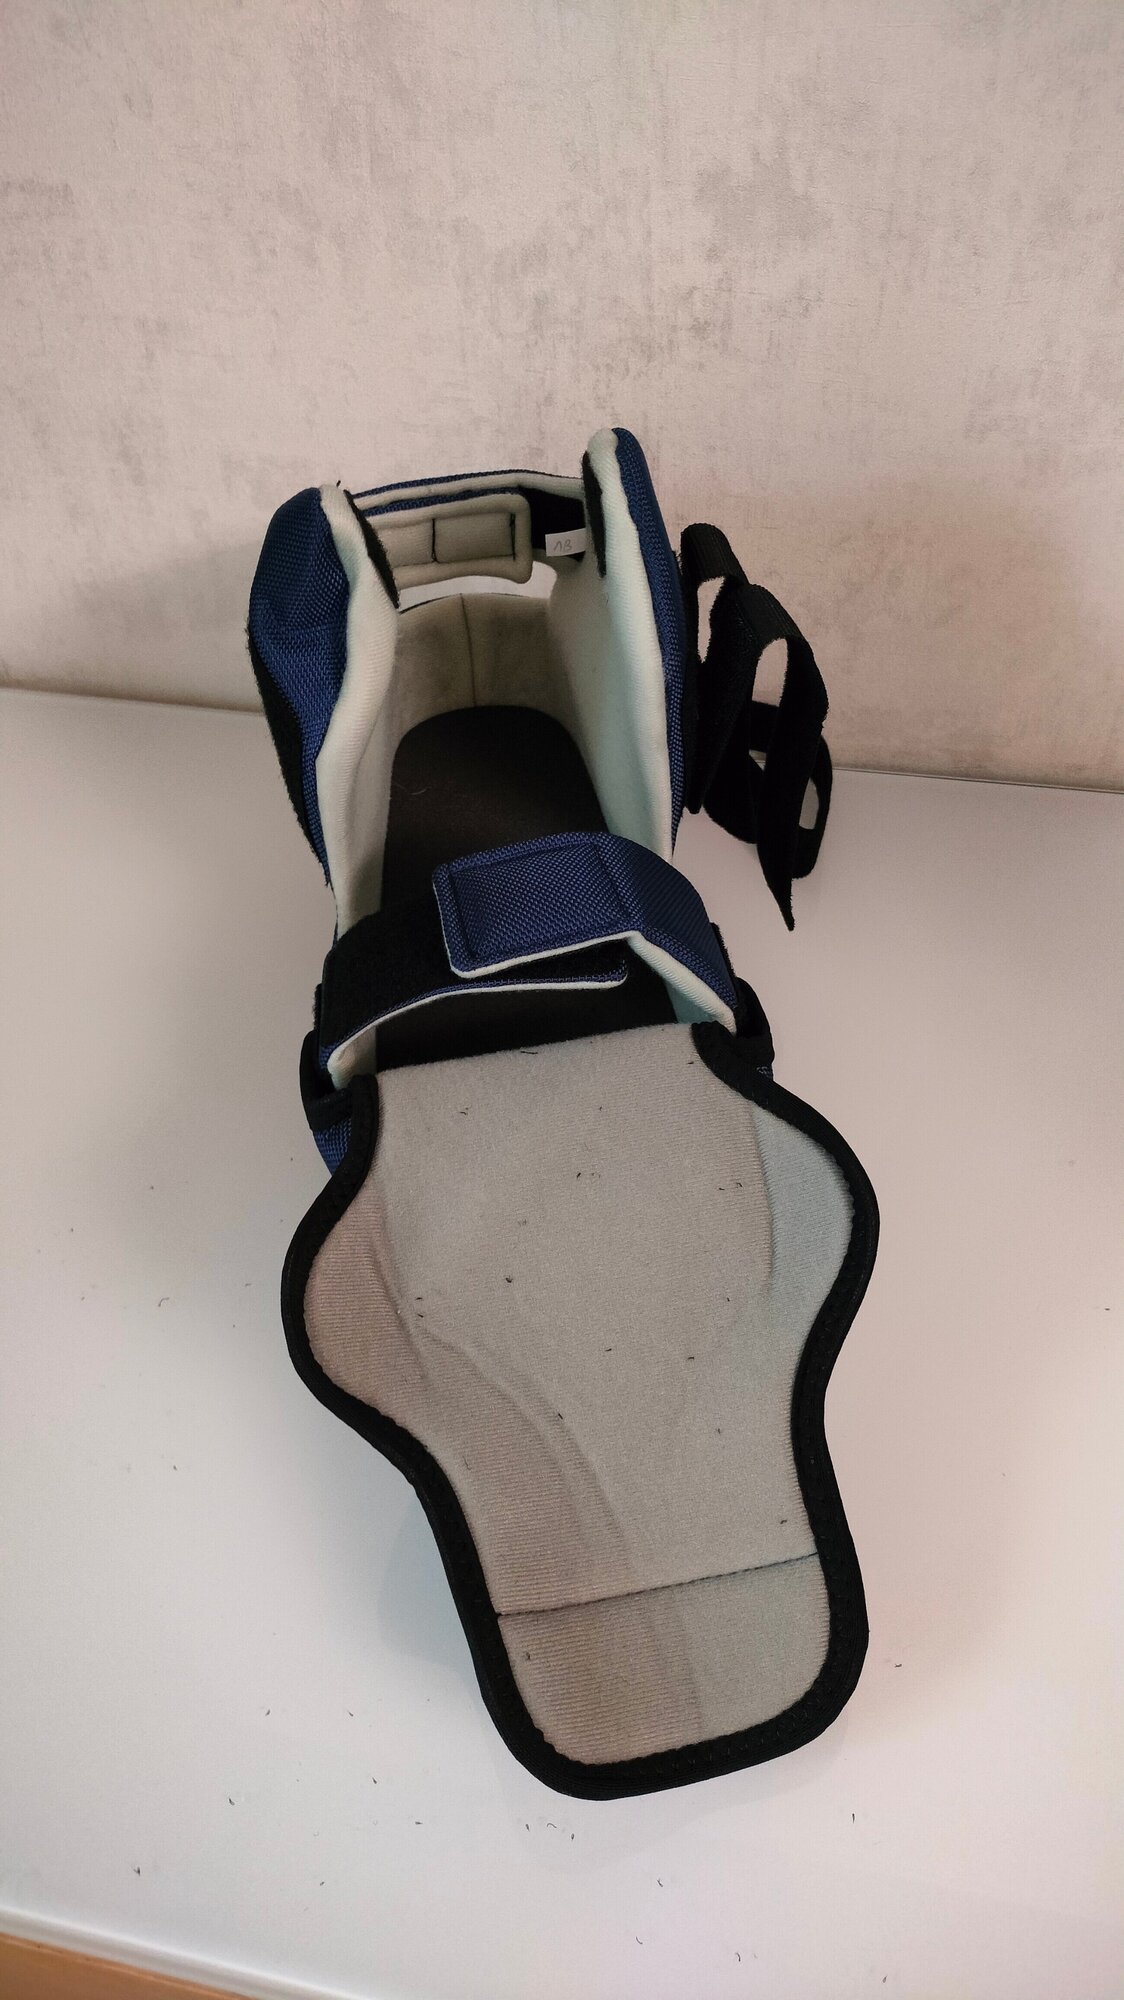 LM-406 LUOMMA барука, компенсаторный ботинок, обувь ортопедическая многоцелевая, послеоперационная, съемный чехол. Цена за 1 полупарок, р.35-37 - фотография № 13